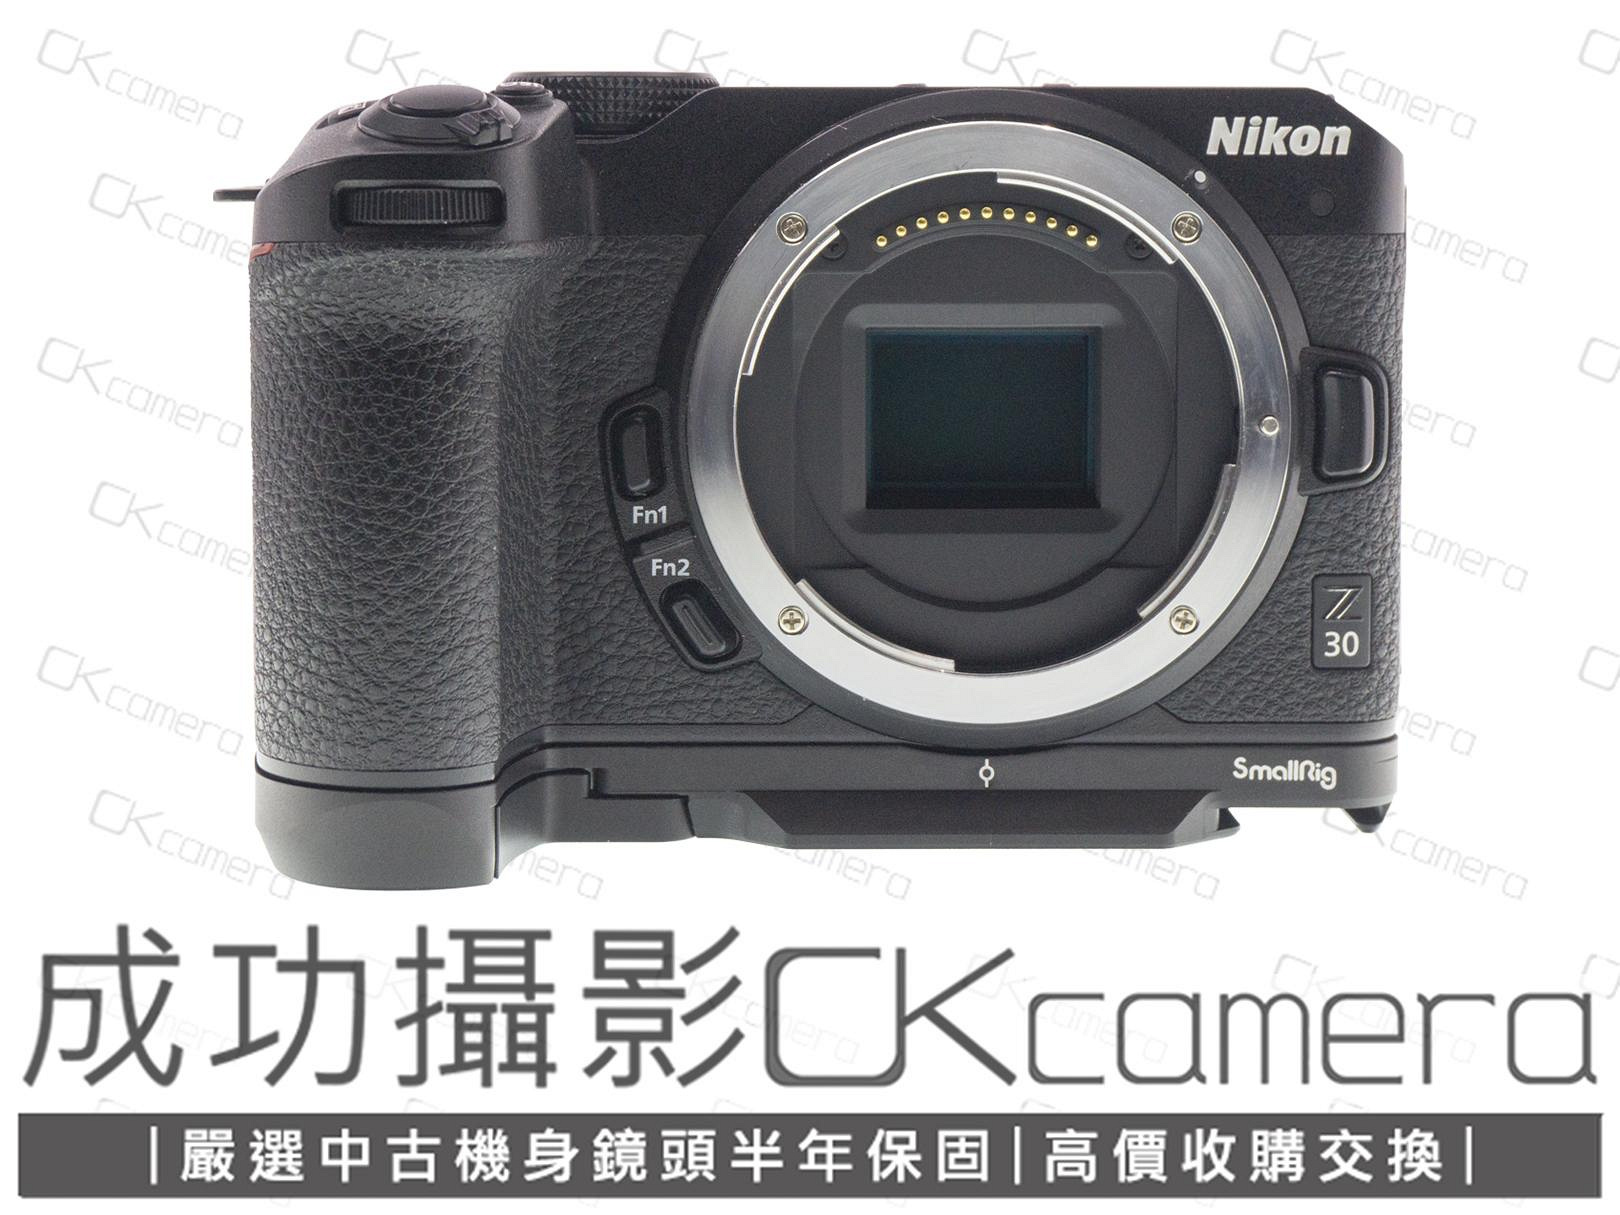 成功攝影 Nikon Z30 Body 中古二手 2088萬像素 超值輕巧 數位無反單眼相機 4K攝錄 VLOG神機 防塵防滴 國祥公司貨 保固半年